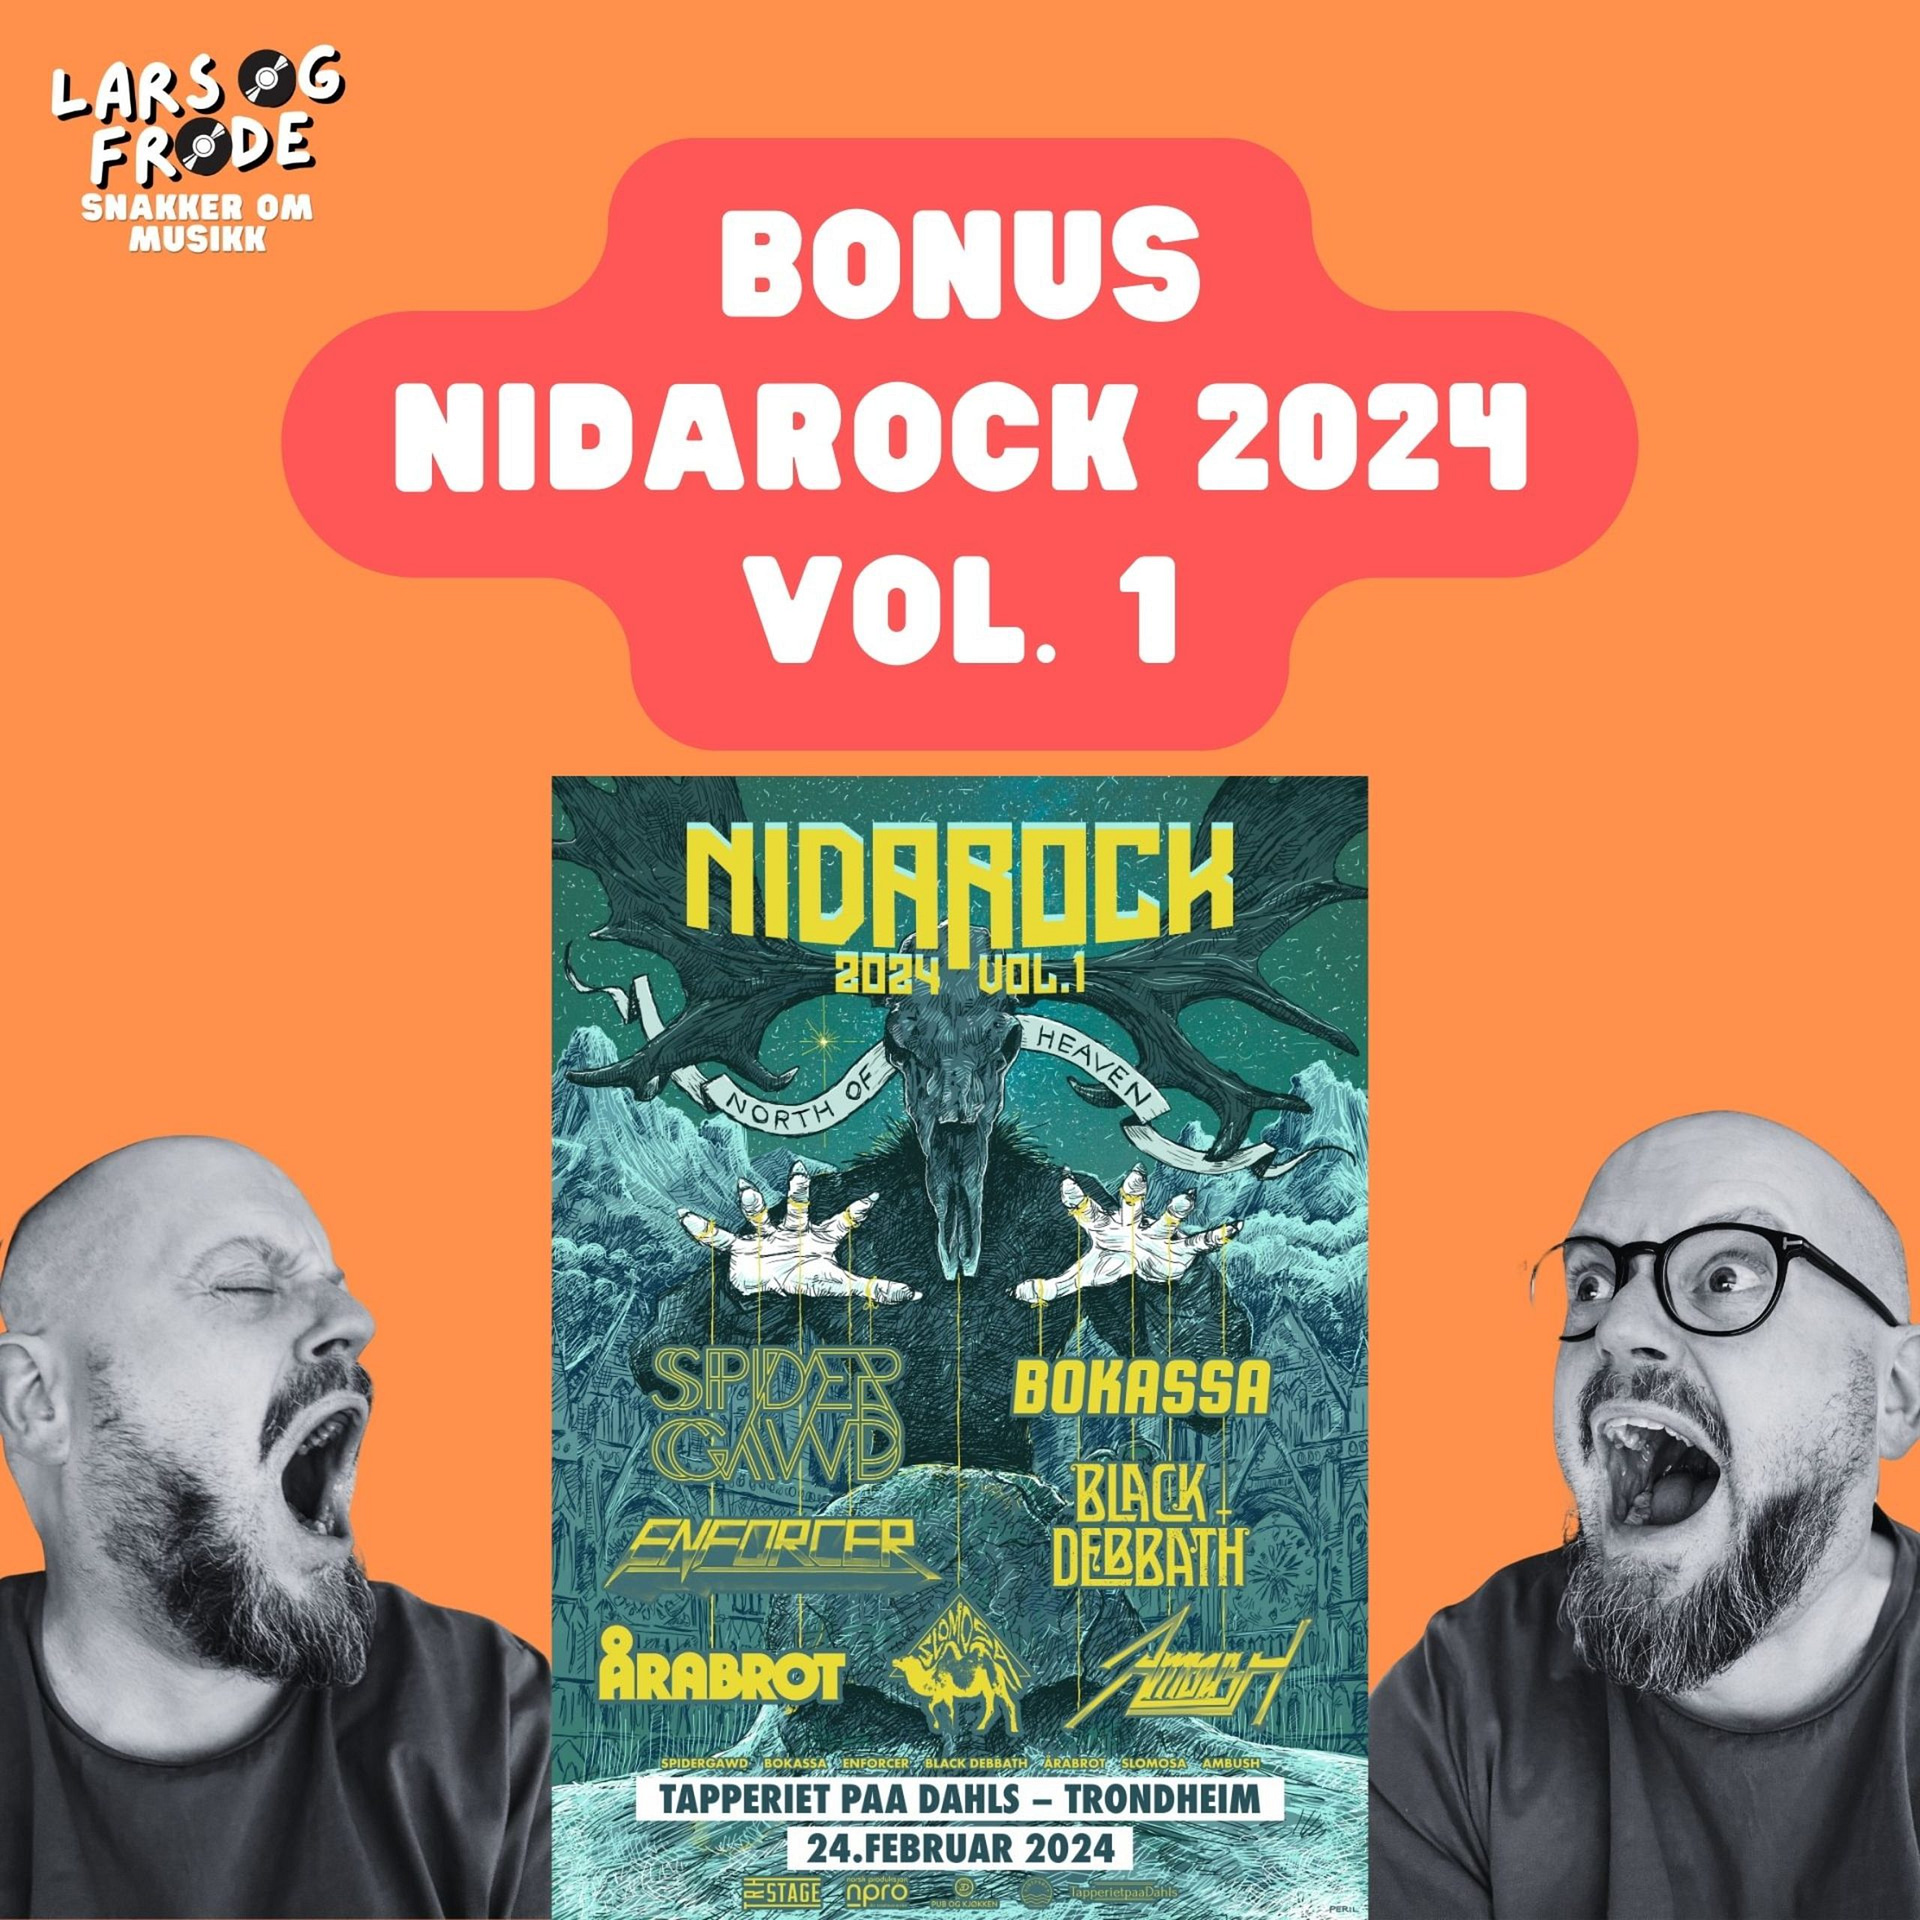 NidaRock 2024 vol. 1 – Bonusepisode